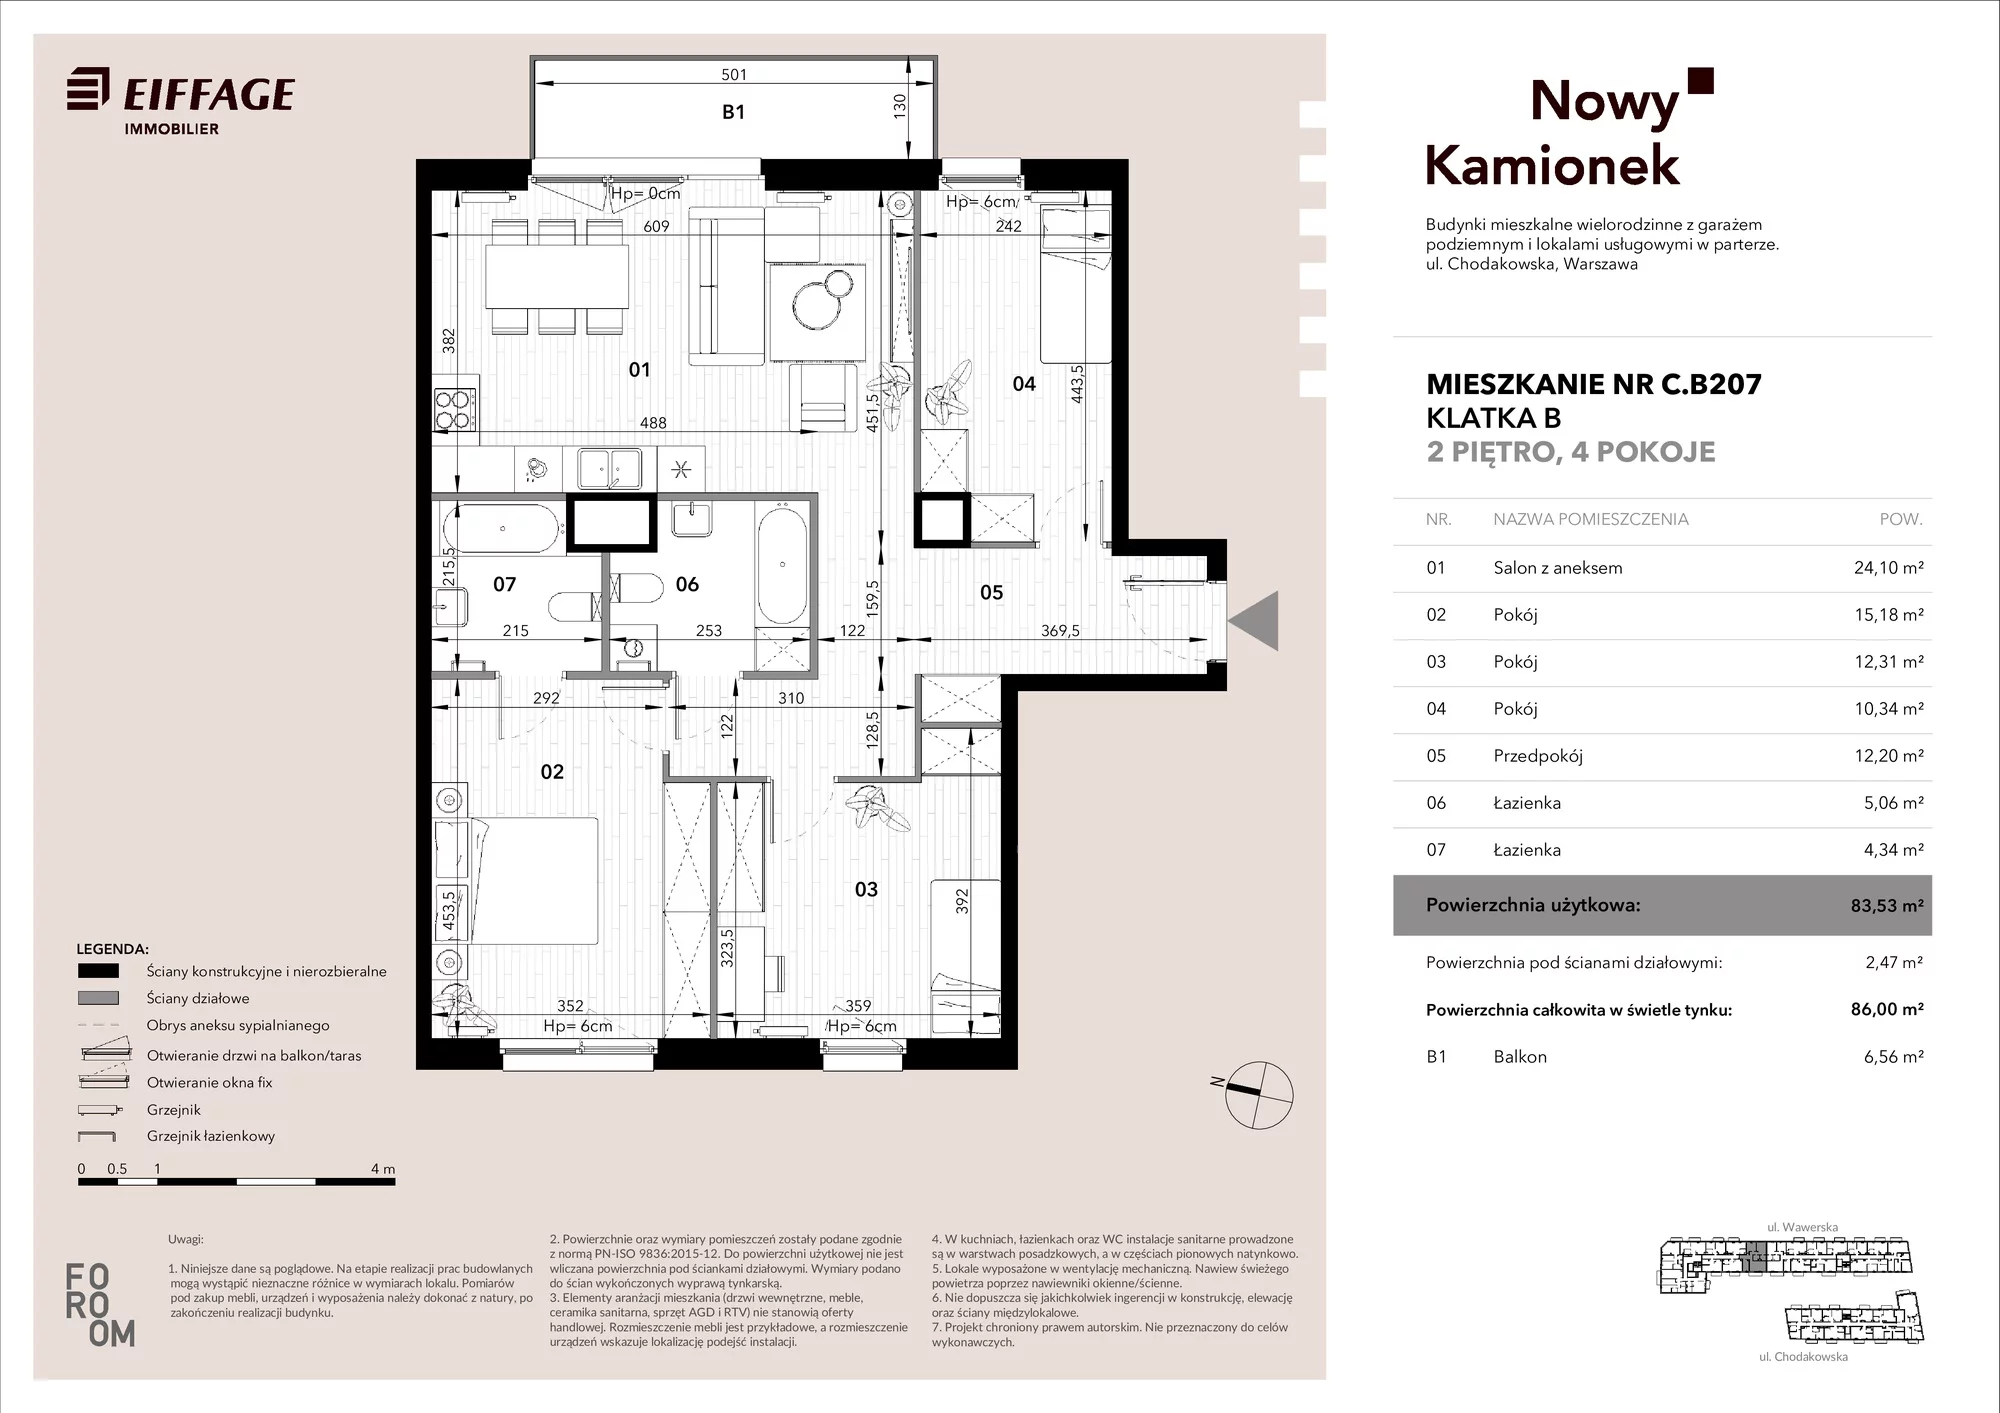 Mieszkanie 83,53 m², piętro 2, oferta nr C.B207, Nowy Kamionek, Warszawa, Praga Południe, Kamionek, ul. Chodakowska